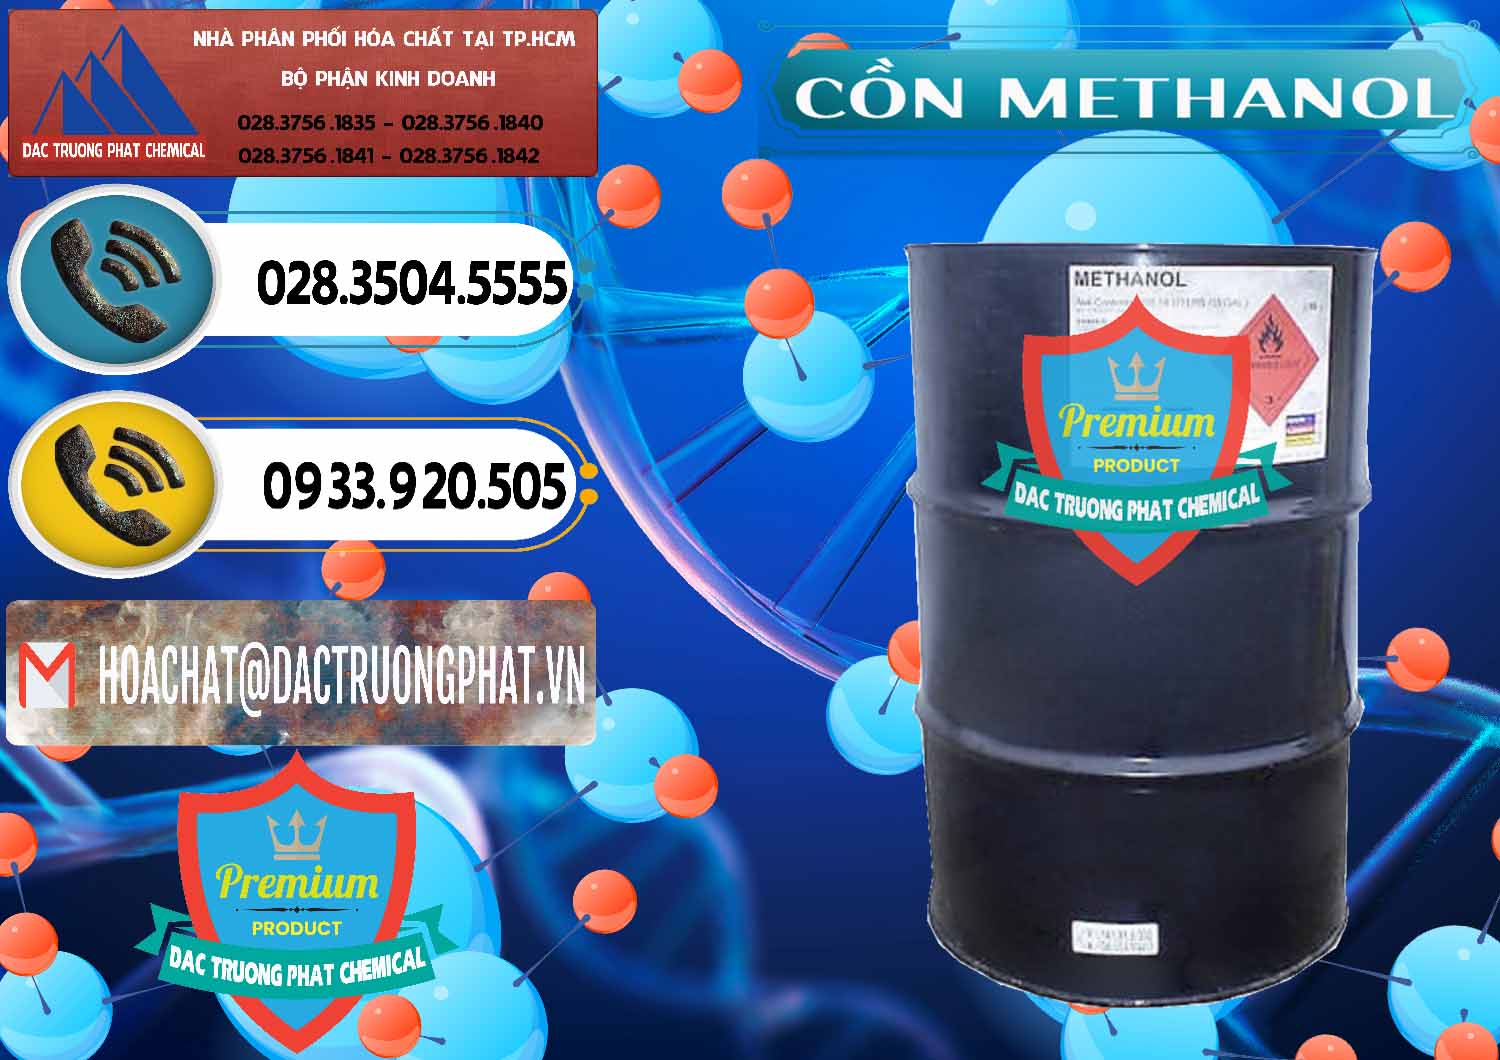 Chuyên phân phối - bán Cồn Methanol - Methyl Alcohol Mã Lai Malaysia - 0331 - Nơi phân phối và bán hóa chất tại TP.HCM - hoachatdetnhuom.vn